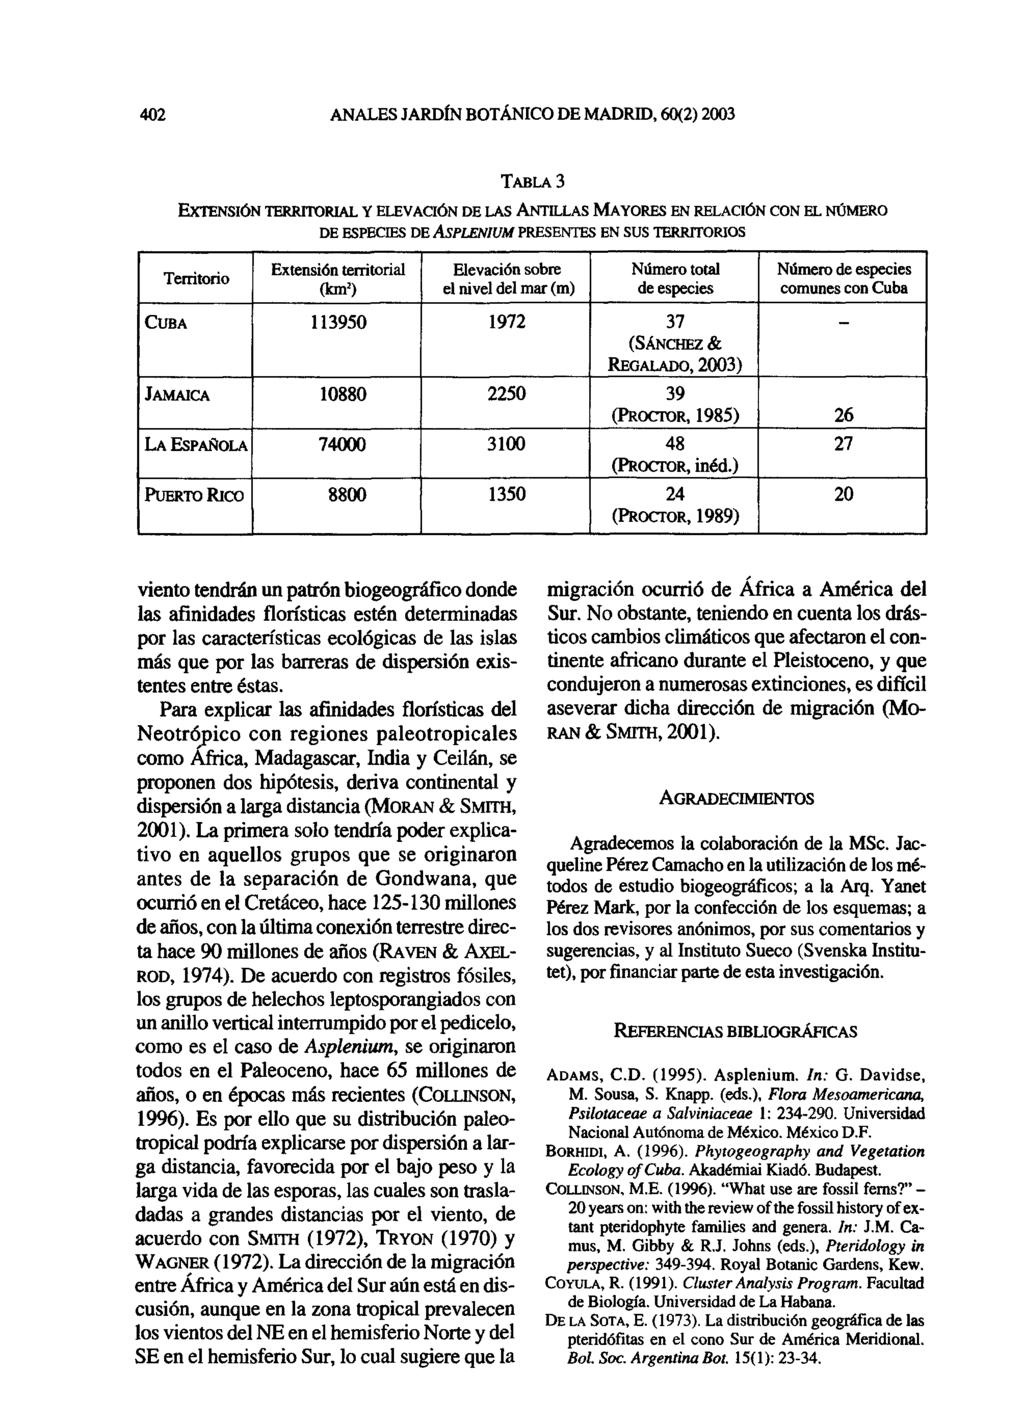 402 ANALES JARDÍN BOTÁNICO DE MADRID, 60(2) 2003 TABLA 3 EXTENSIÓN TERRITORIAL Y ELEVACIÓN DE LAS ANTILLAS MAYORES EN RELACIÓN CON EL NÚMERO DE ESPECIES DE ASPLENIUM PRESENTES EN SUS TERRITORIOS